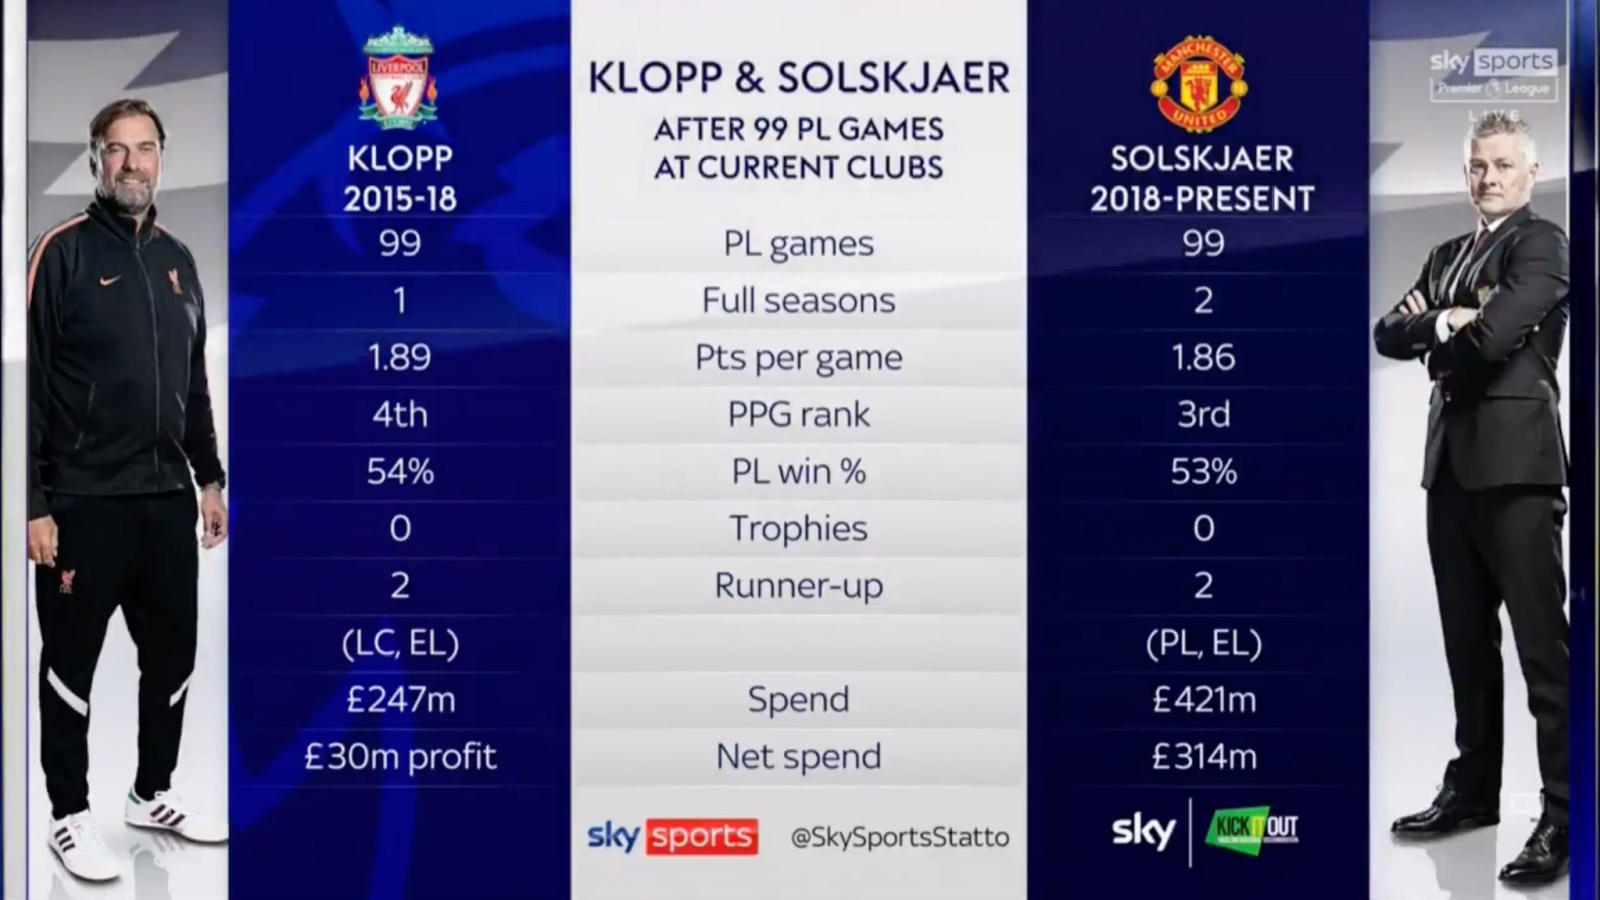 Football fans slam Sky Sports for comparing Solskjaer with Klopp on MNF